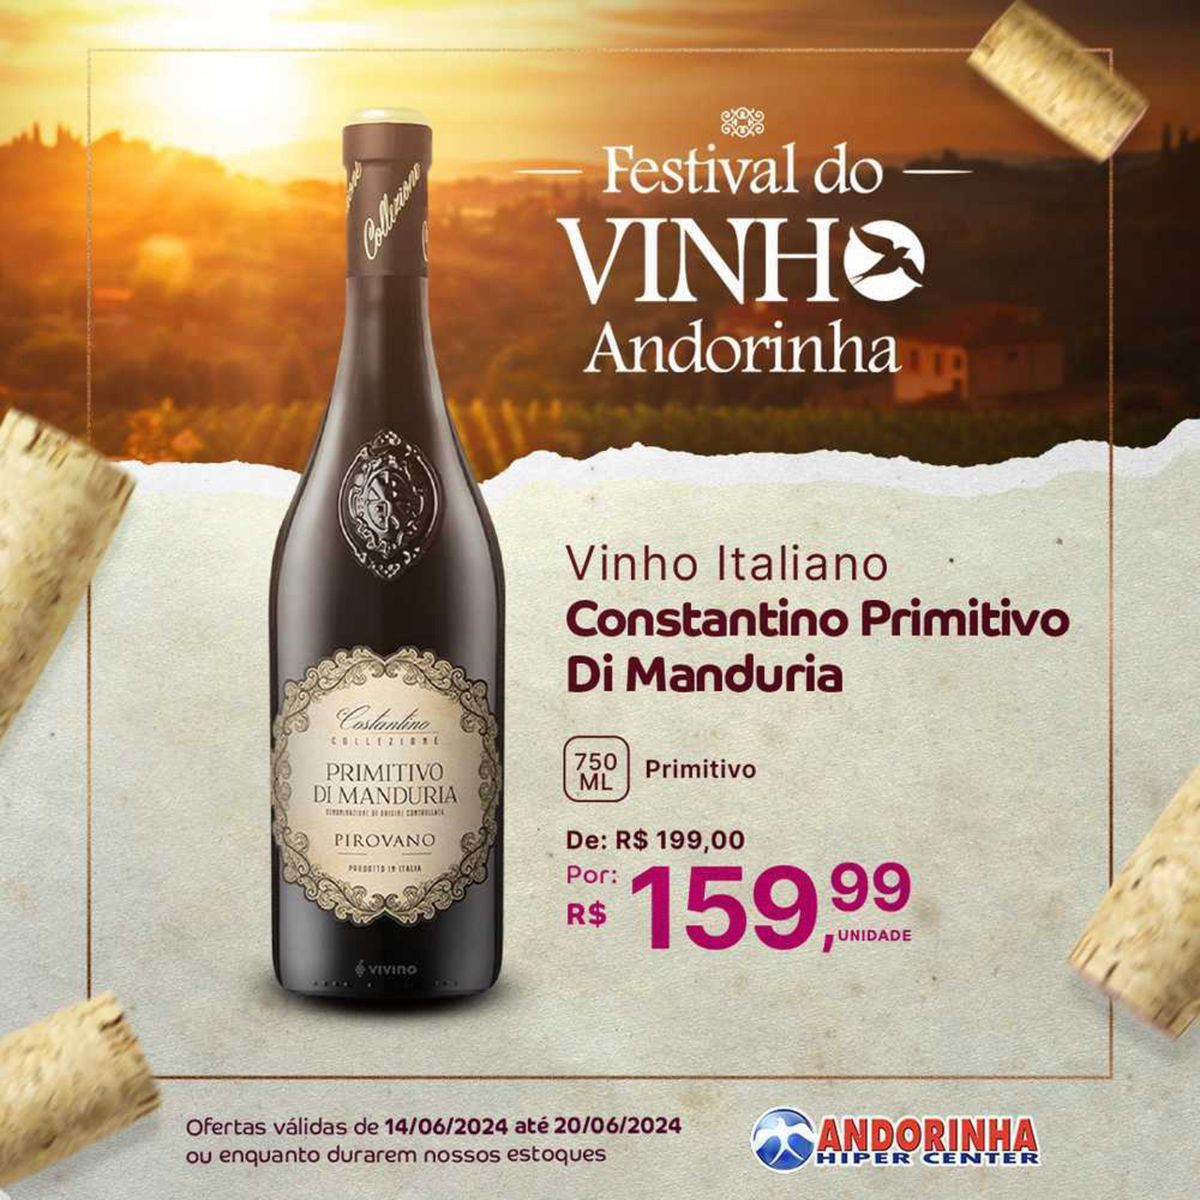 Vinho Italiano Constantino Primitivo RG o Di Manduria